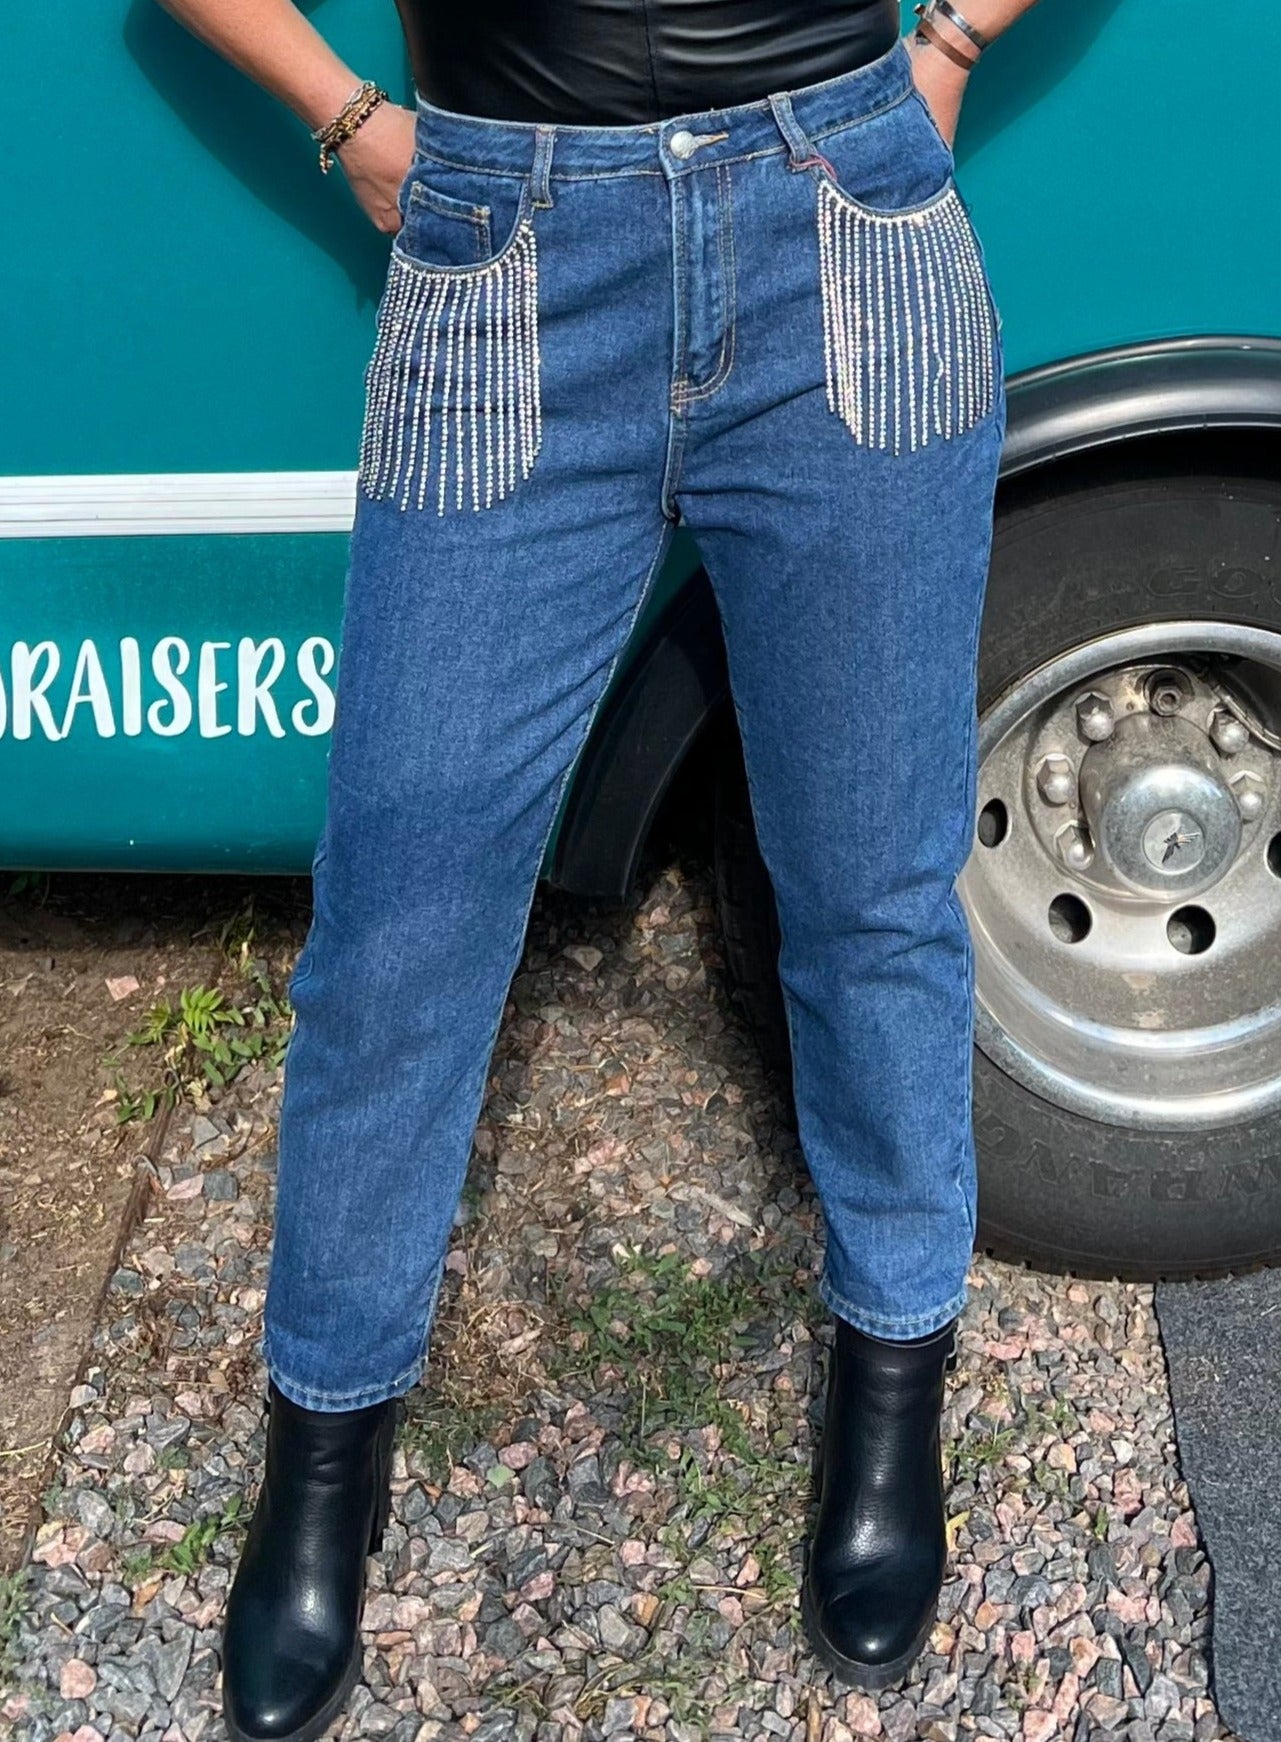 Rhinestone Fringe Jeans